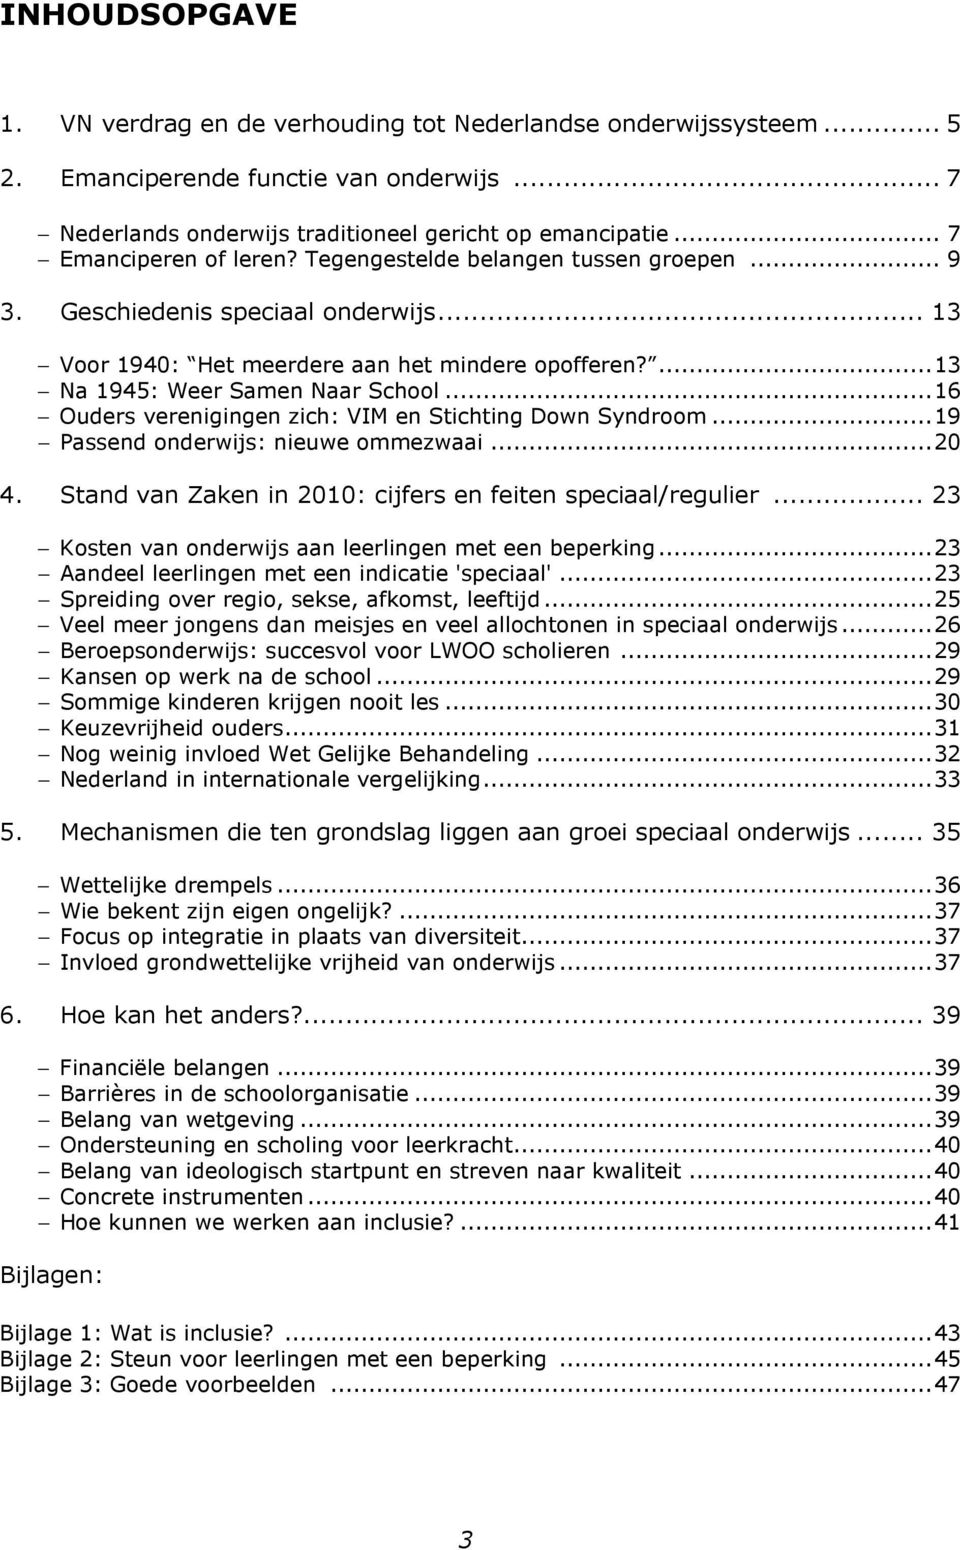 ..16 Ouders verenigingen zich: VIM en Stichting Down Syndroom...19 Passend onderwijs: nieuwe ommezwaai...20 4. Stand van Zaken in 2010: cijfers en feiten speciaal/regulier.